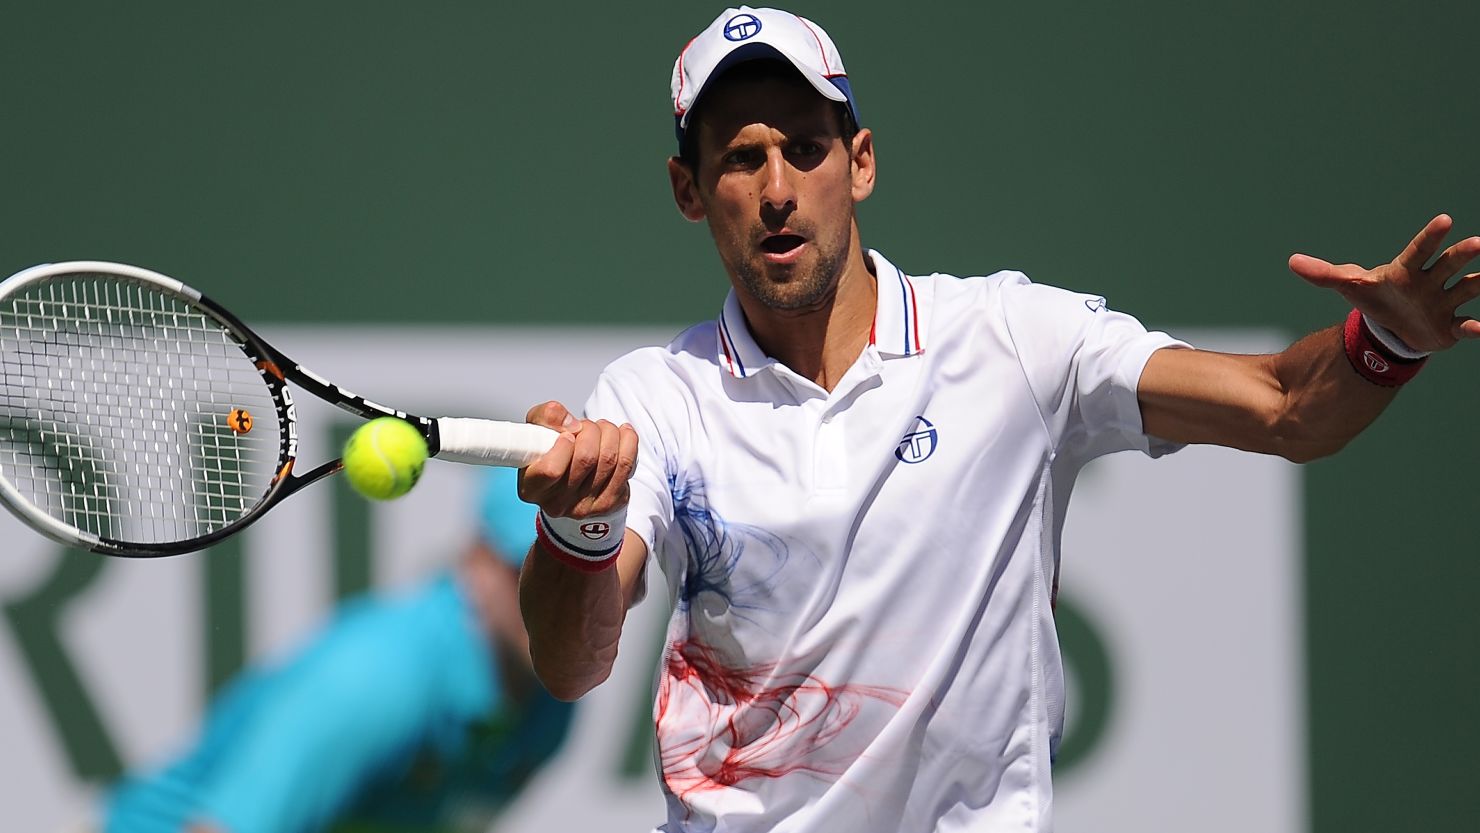 World No. 1 Novak Djokovic has now won 10 consecutive matches at Indian Wells.